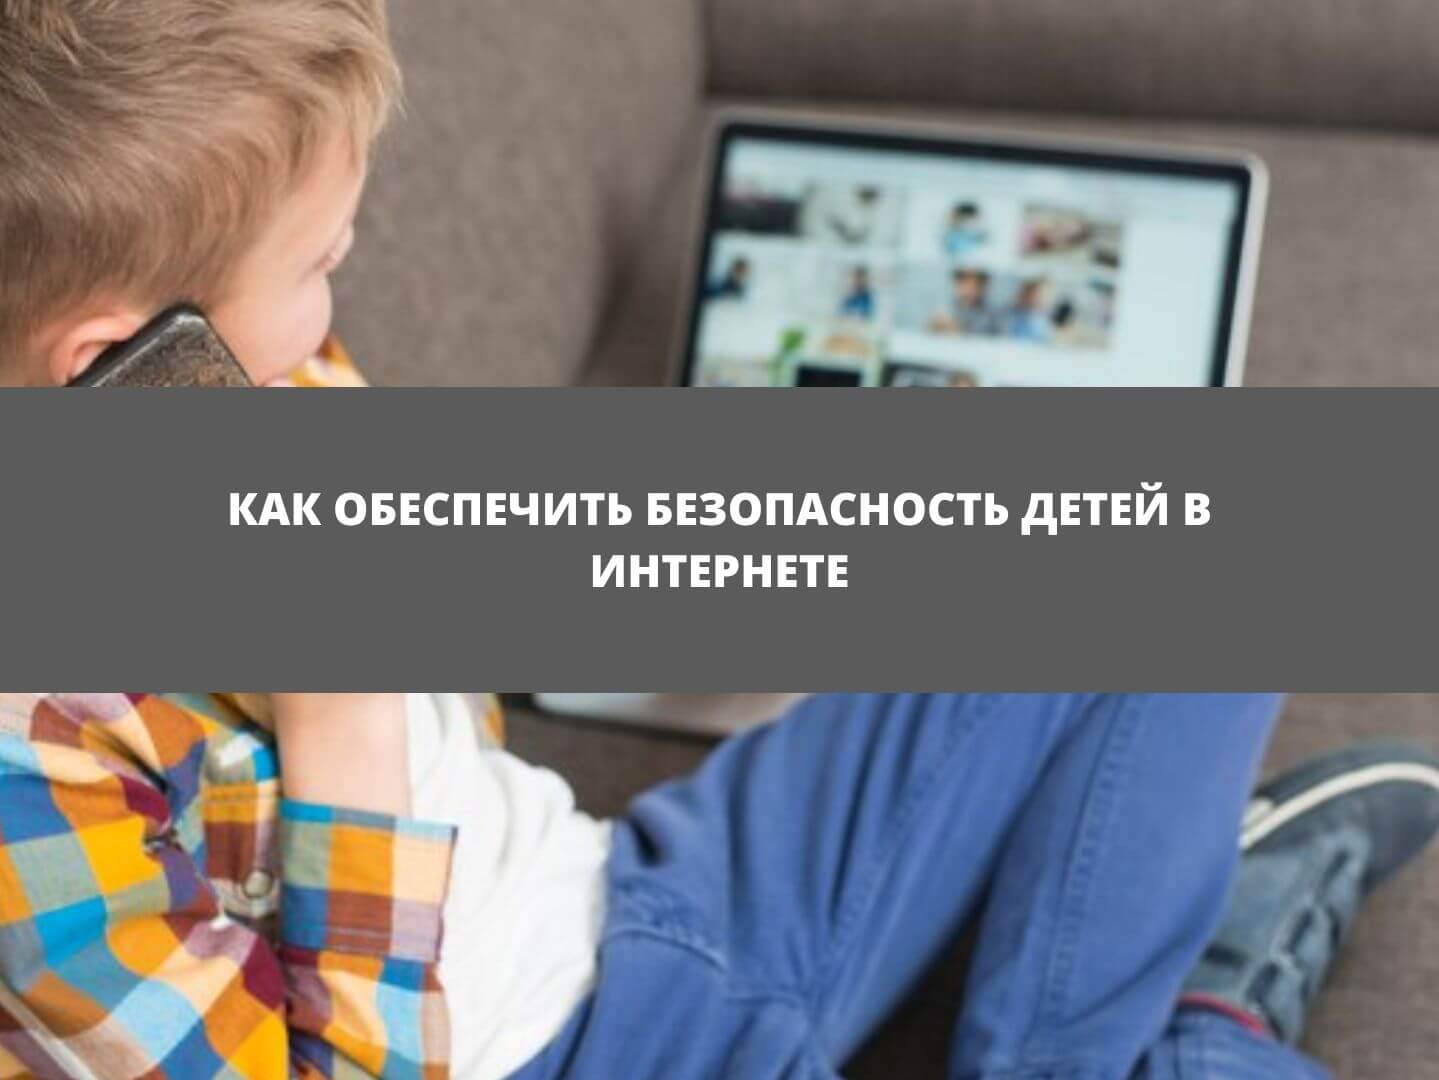 Гайд для родителей: как обеспечить безопасность детей в интернете